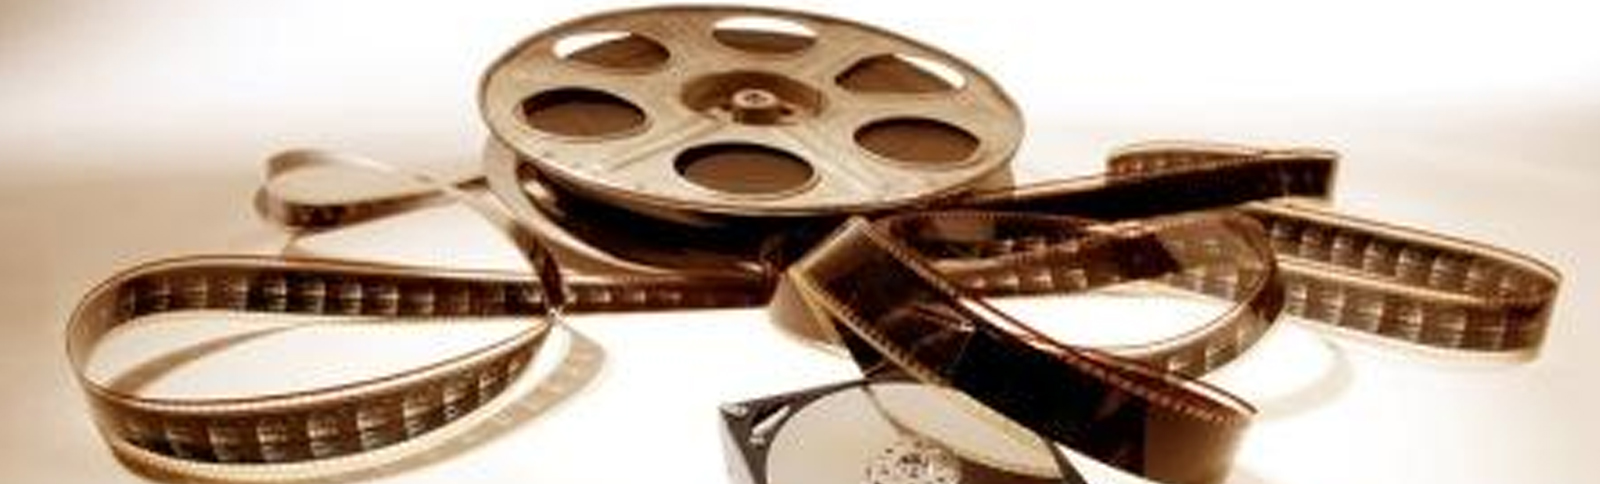 16MM CINE FILM TO DVD OR DIGITAL FILE